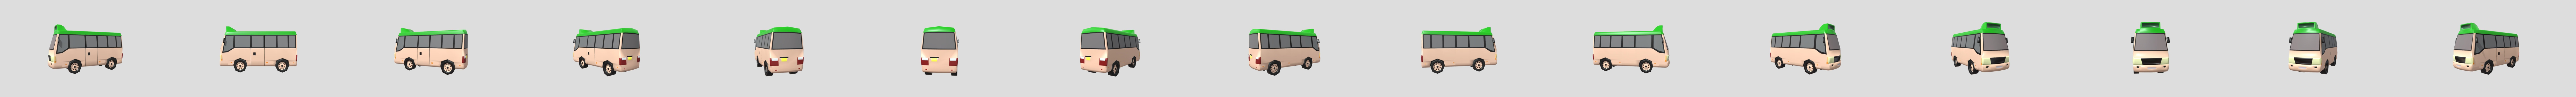 Minibus - businessyuen